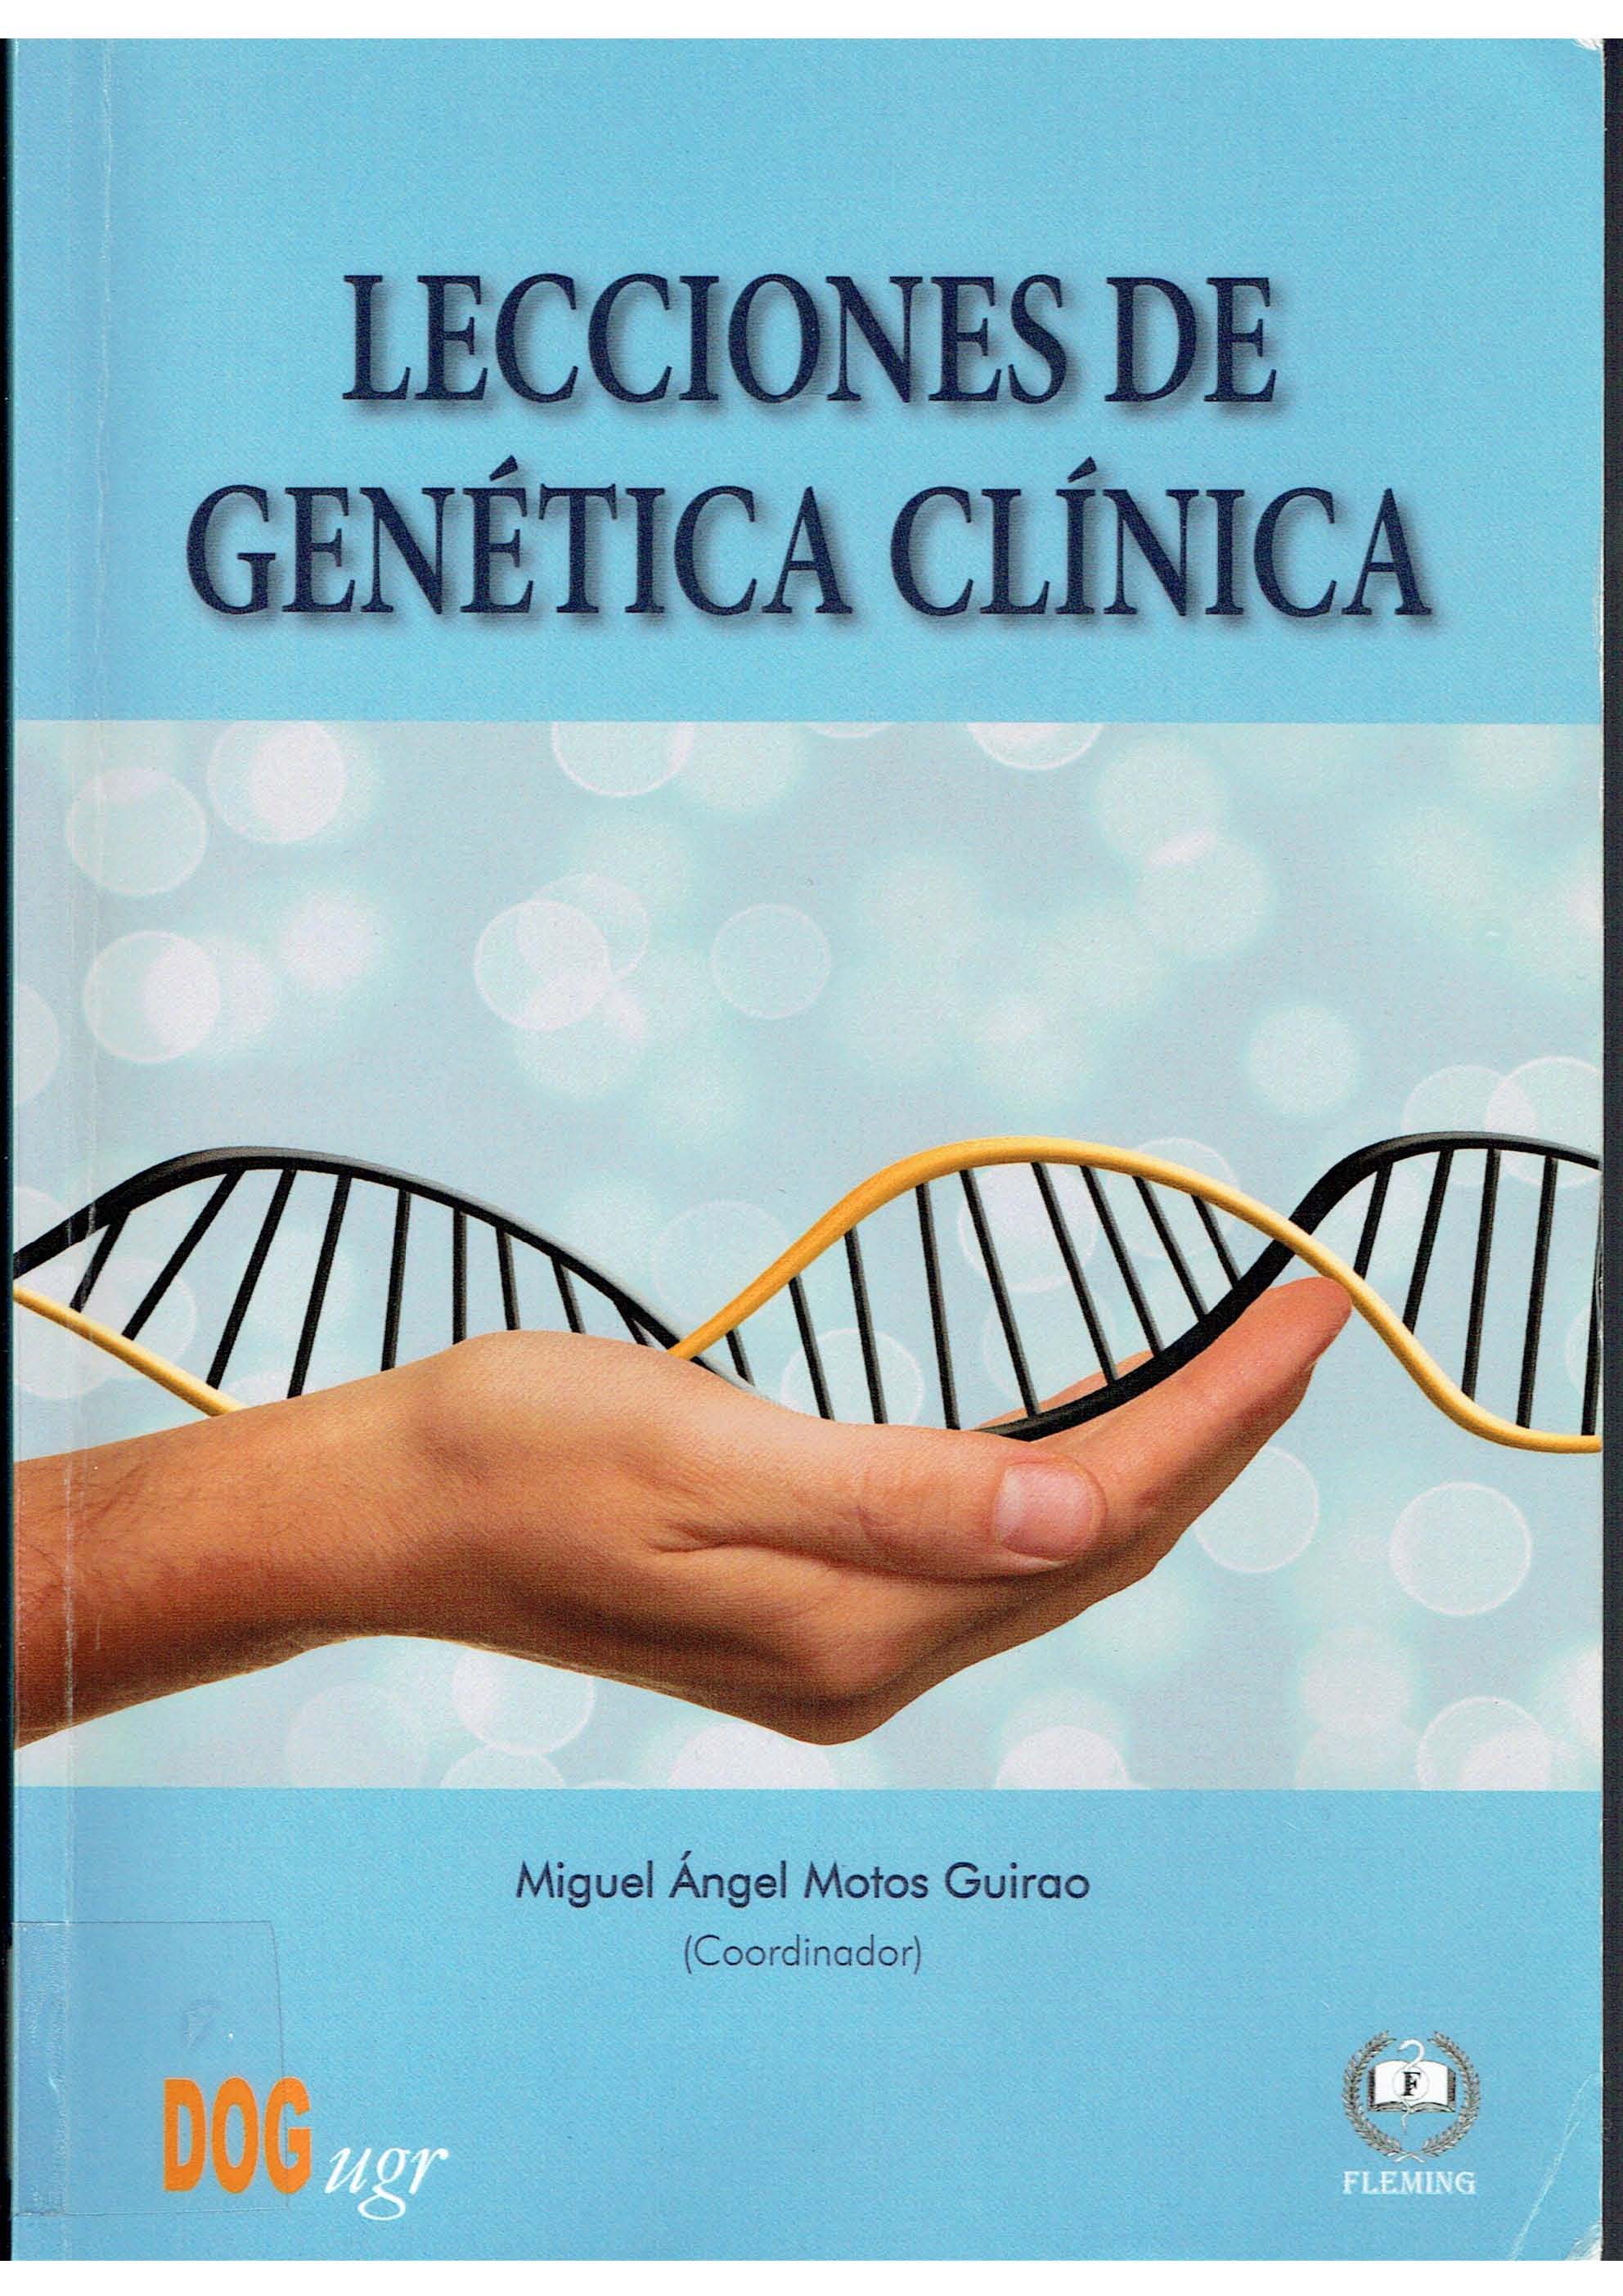 Imagen de portada del libro Lecciones de genética clínica